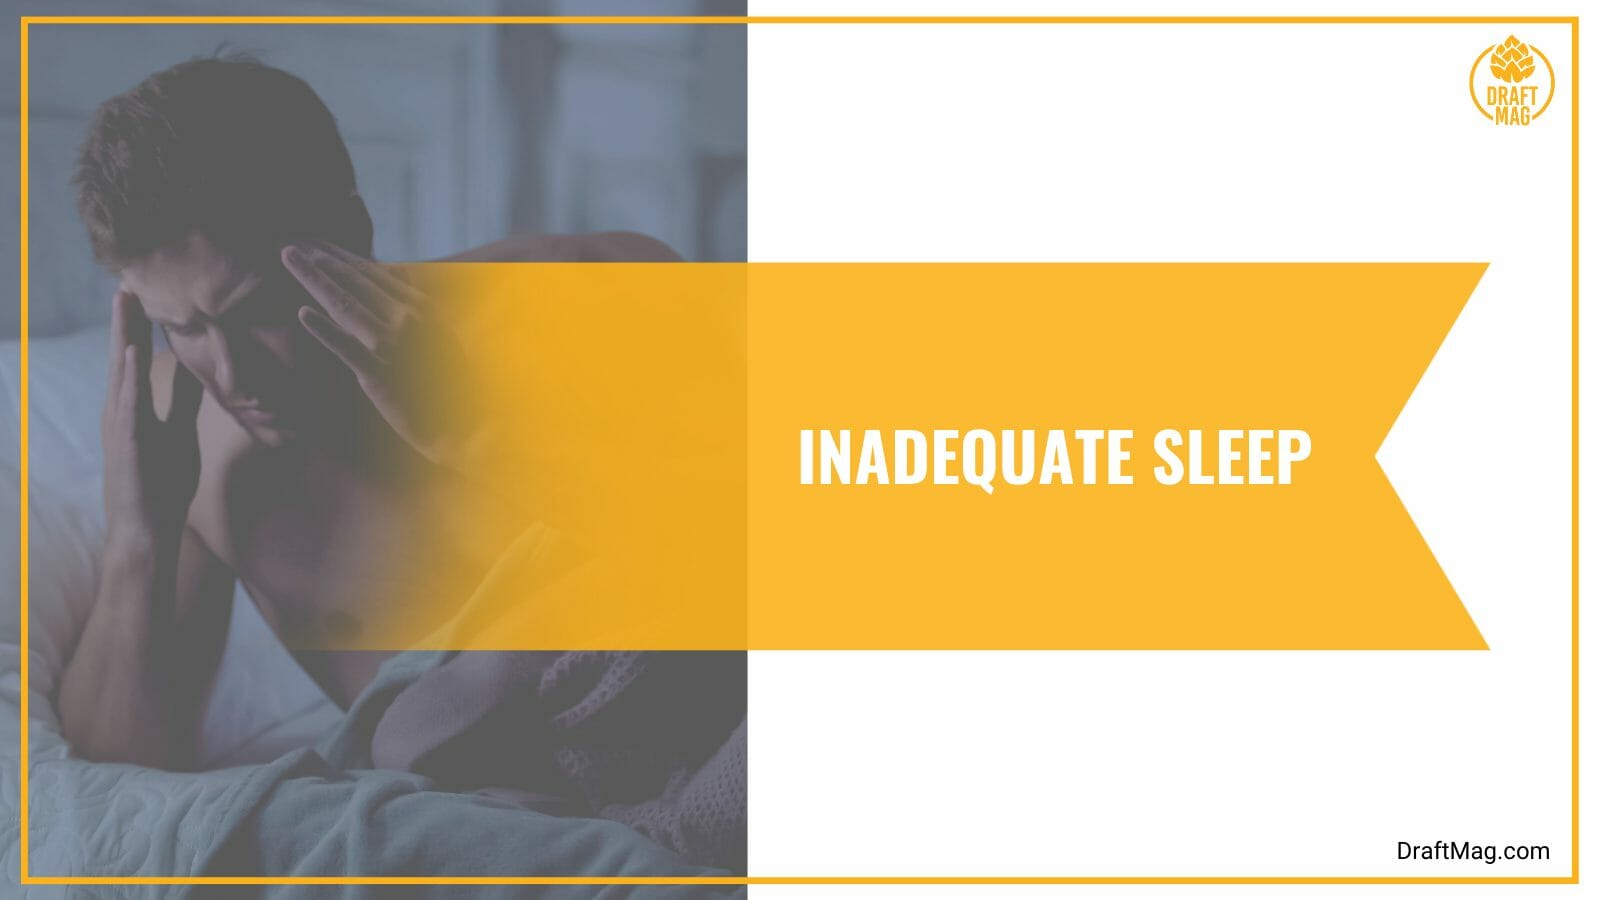 Inadequate sleep